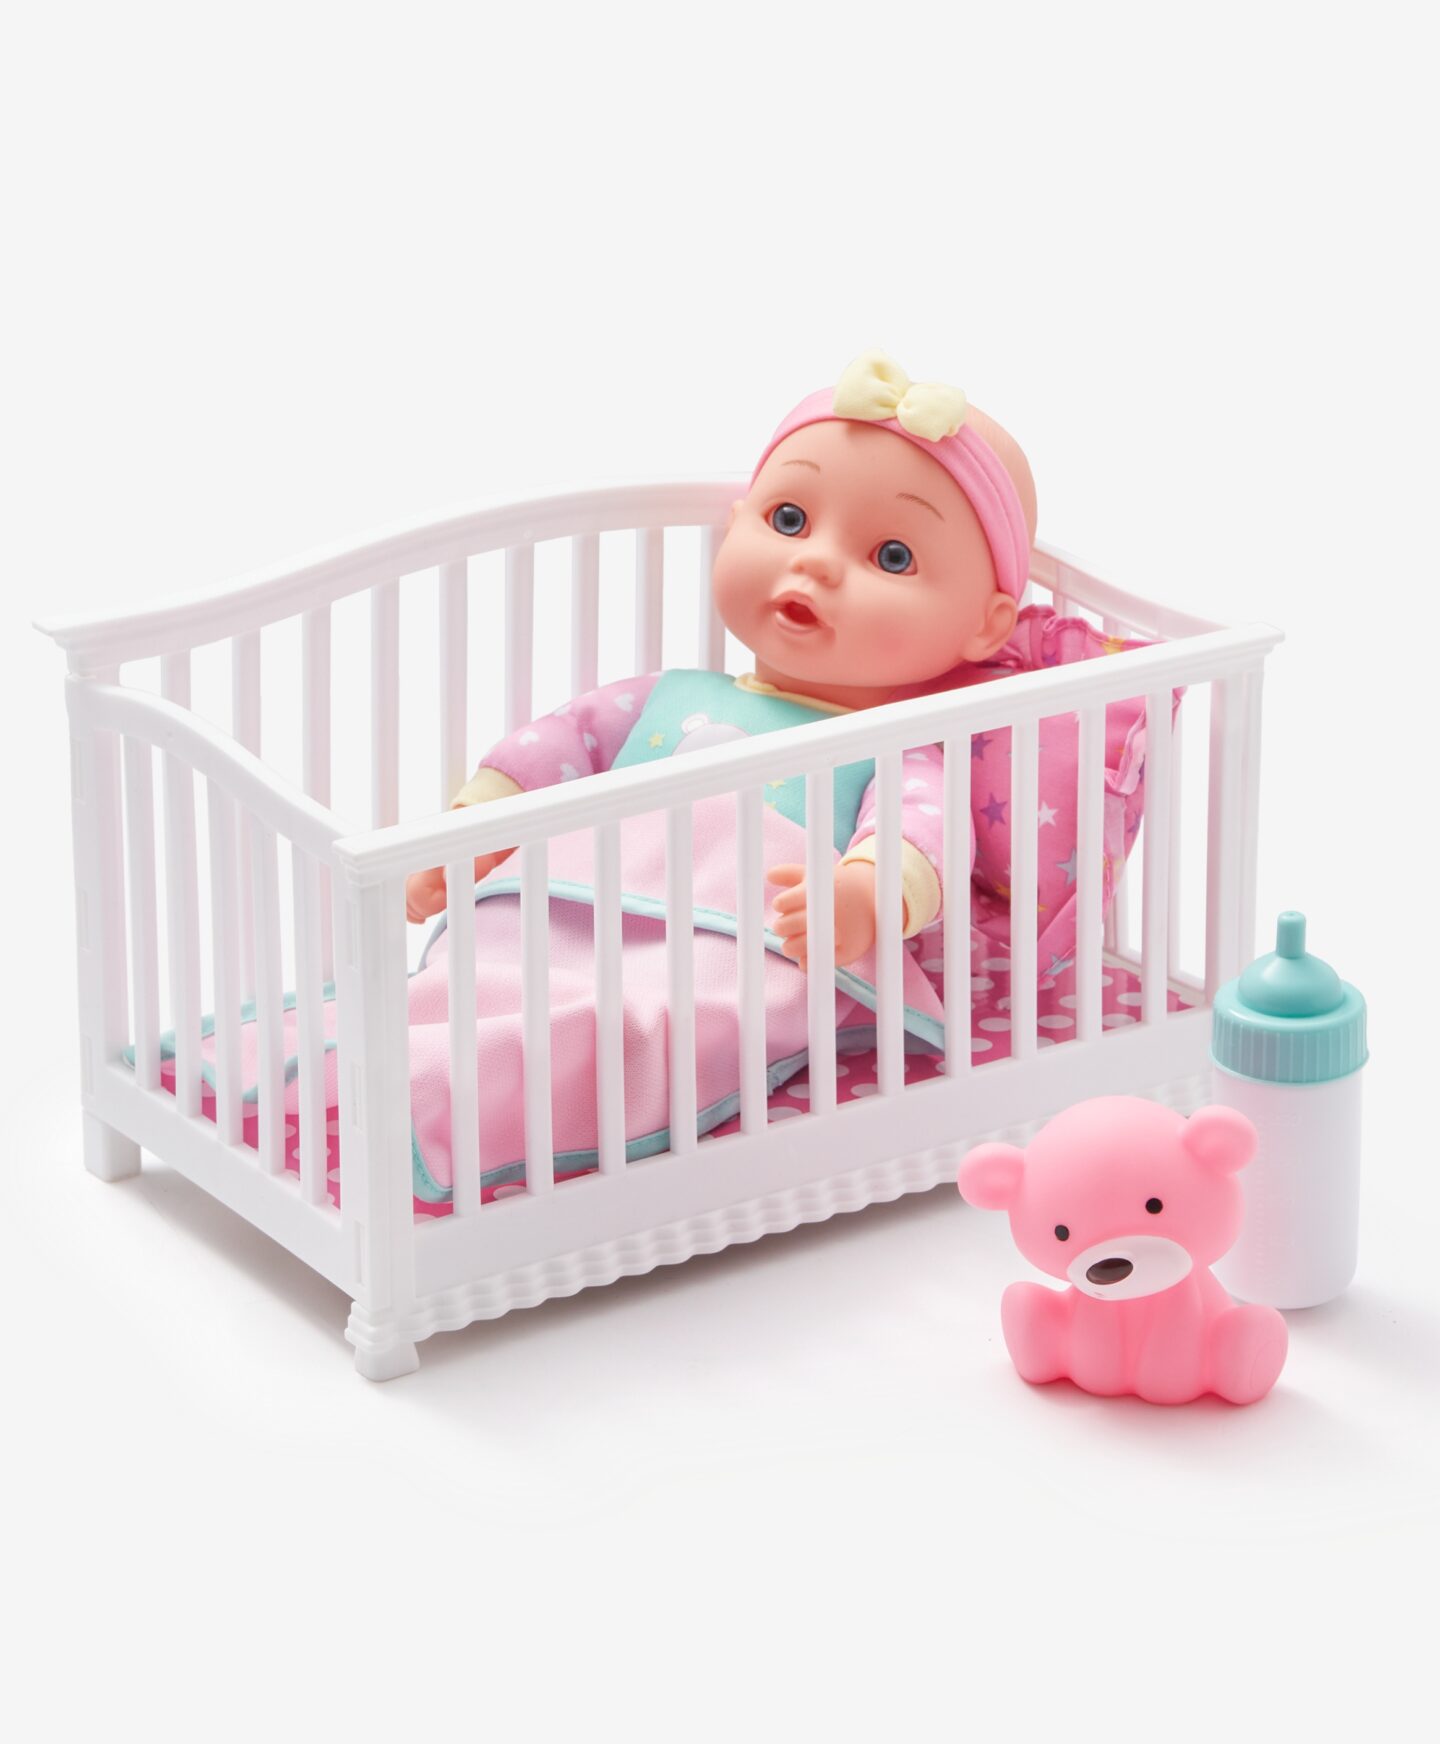 Κούκλα μωρό σε κρεβατάκι με αξεσουάρ, διάφορα χρώματα, 25 εκ.